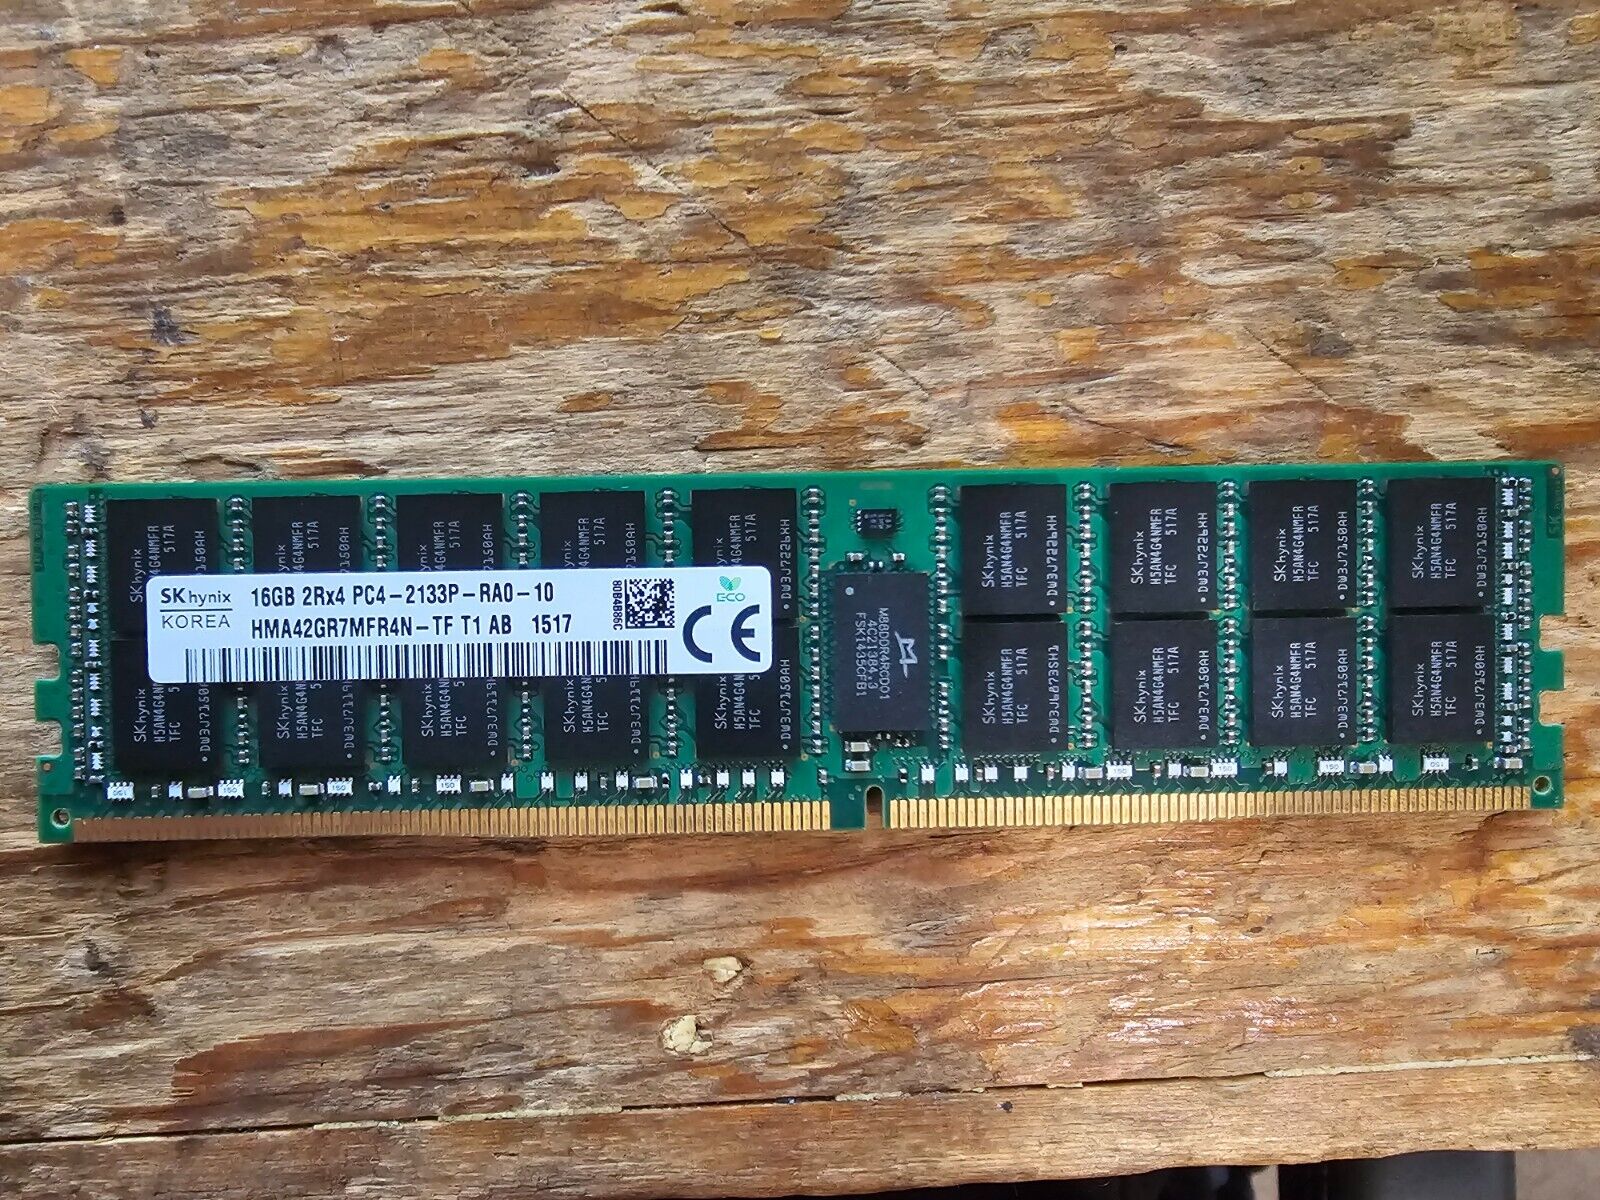 SK Hynix 16GB 2Rx4 PC4 (DDR4) 2133P- RA0-10 HMA42GR7MFR4N-TF T1 AB 1517